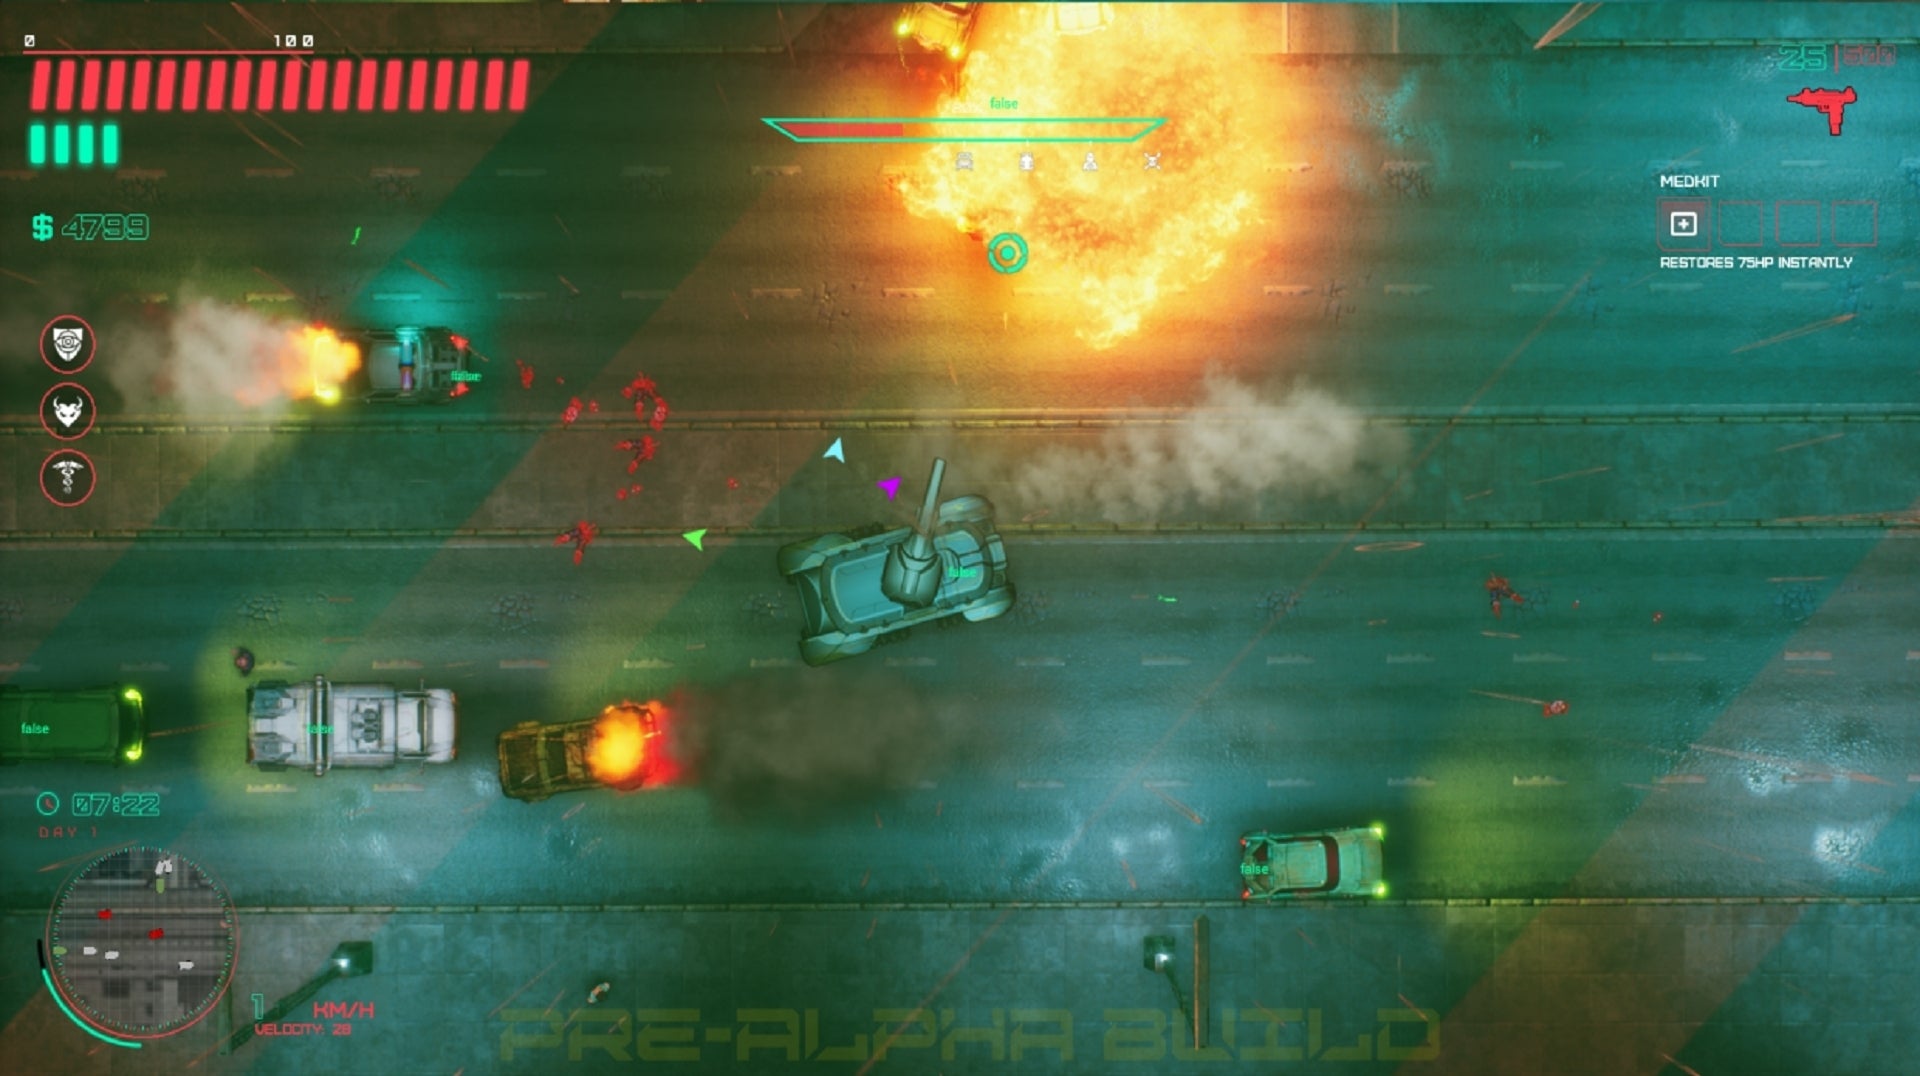 Imagen para Primeras impresiones de Glitchpunk, un juego que mezcla el mítico Grand Theft Auto 2 y Cyberpunk